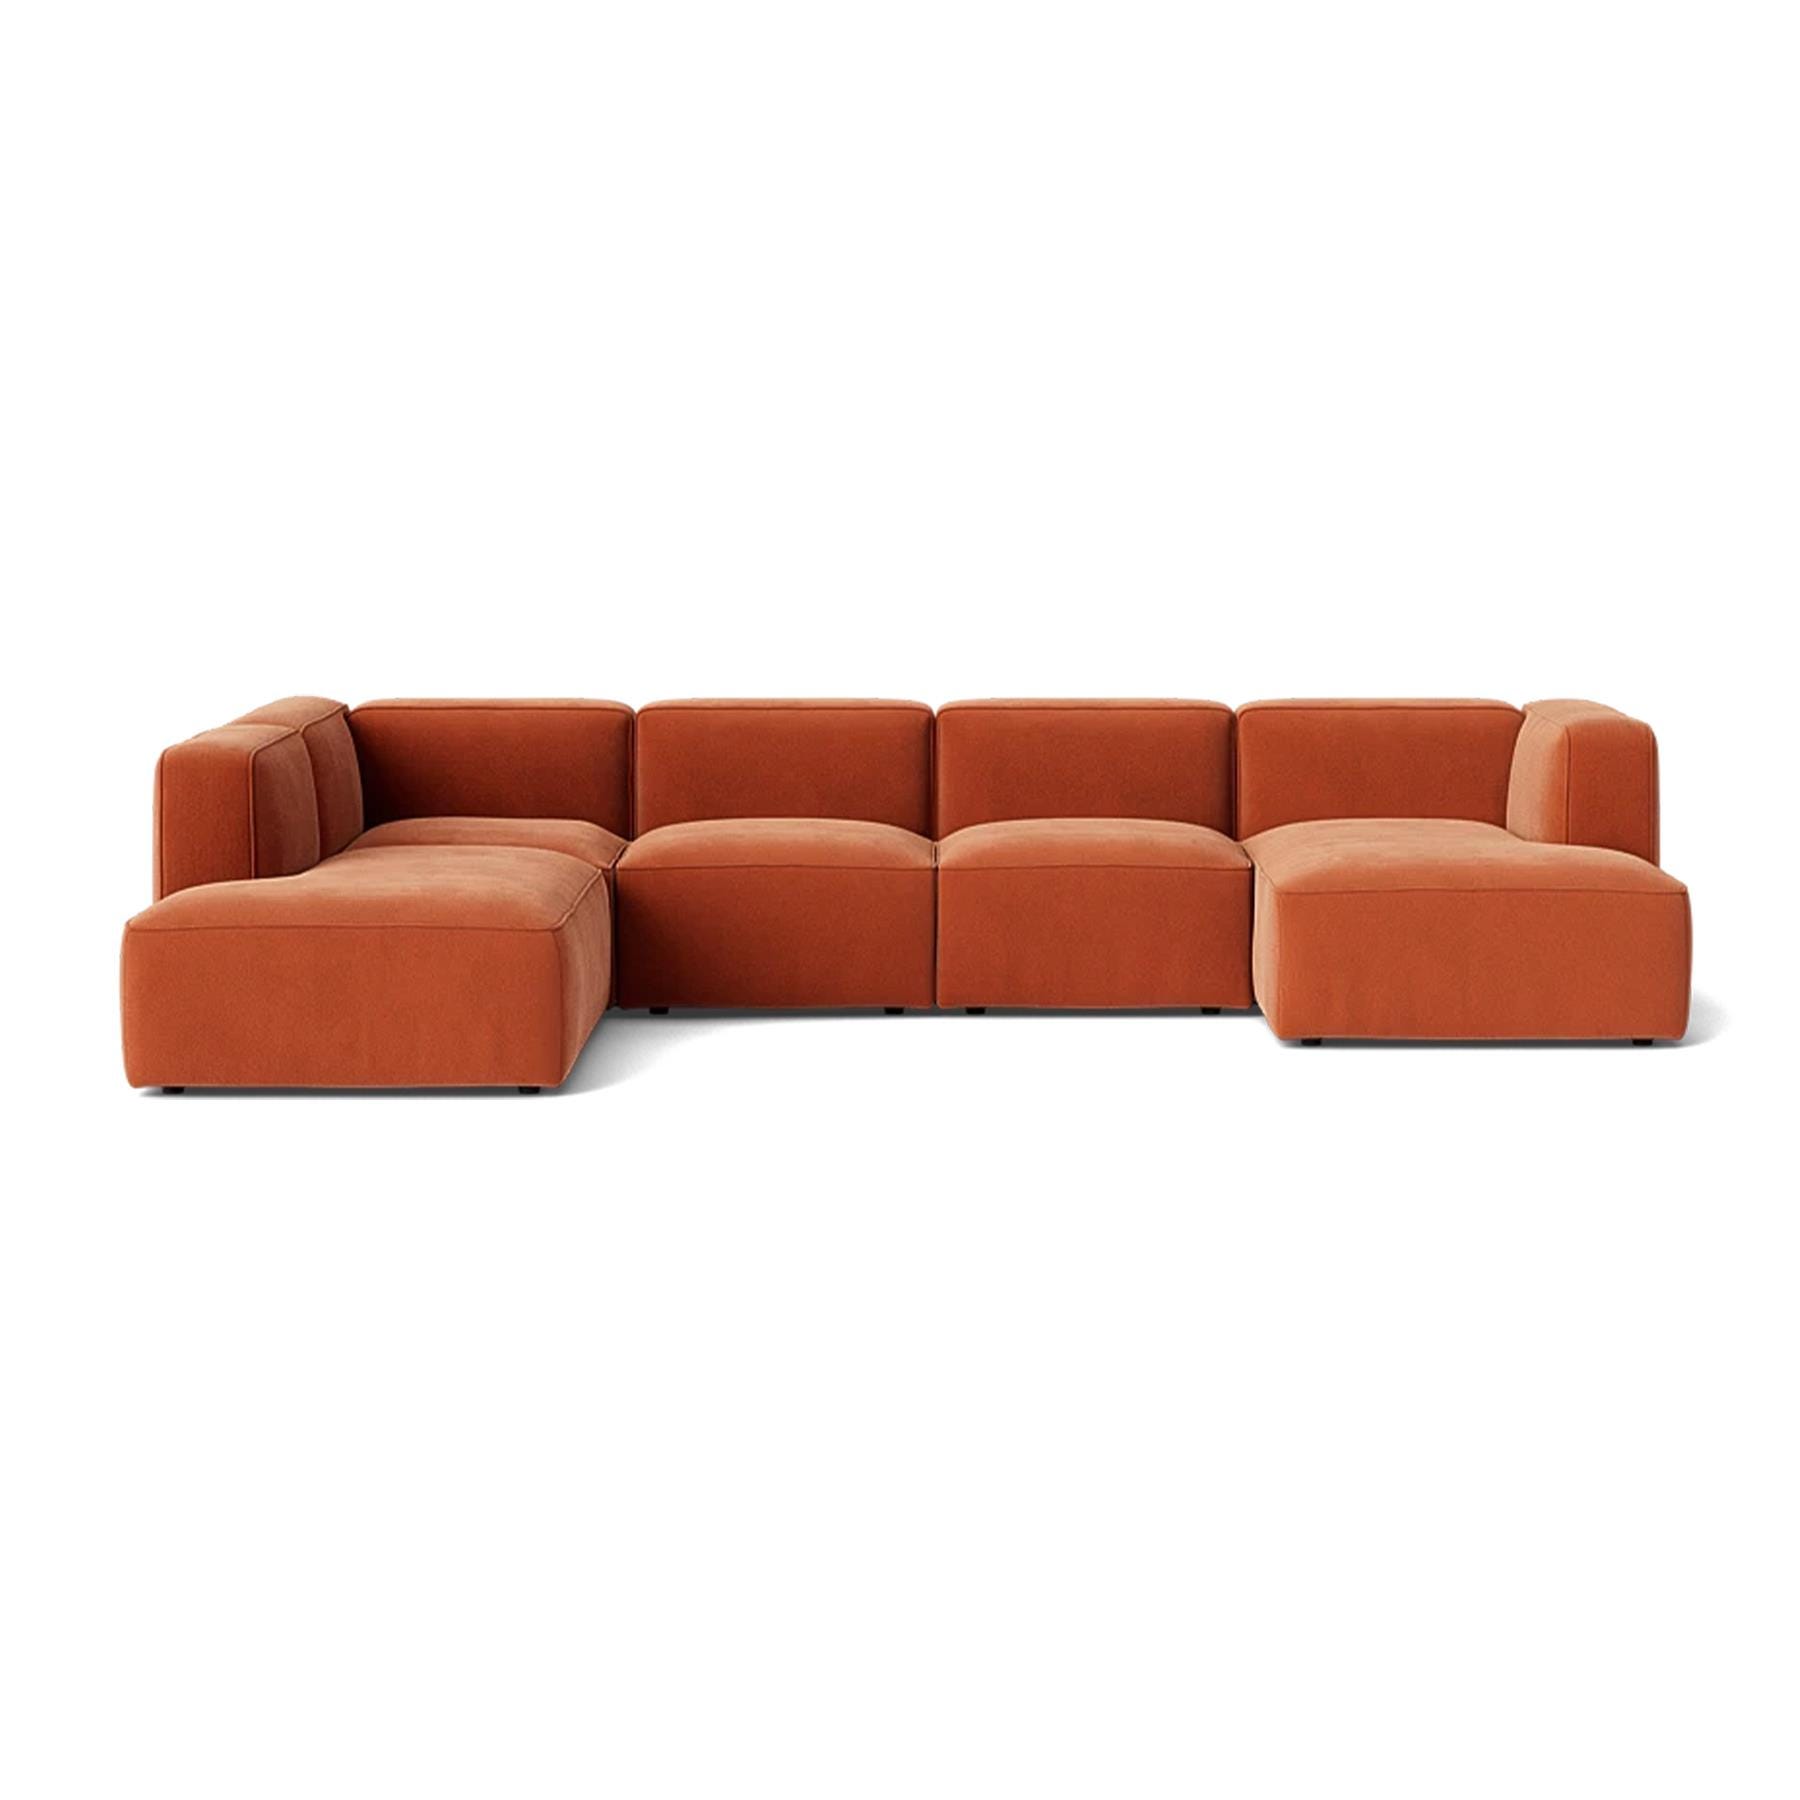 Make Nordic Basecamp Family Sofa Nordic Velvet 100 Right Orange Designer Furniture From Holloways Of Ludlow